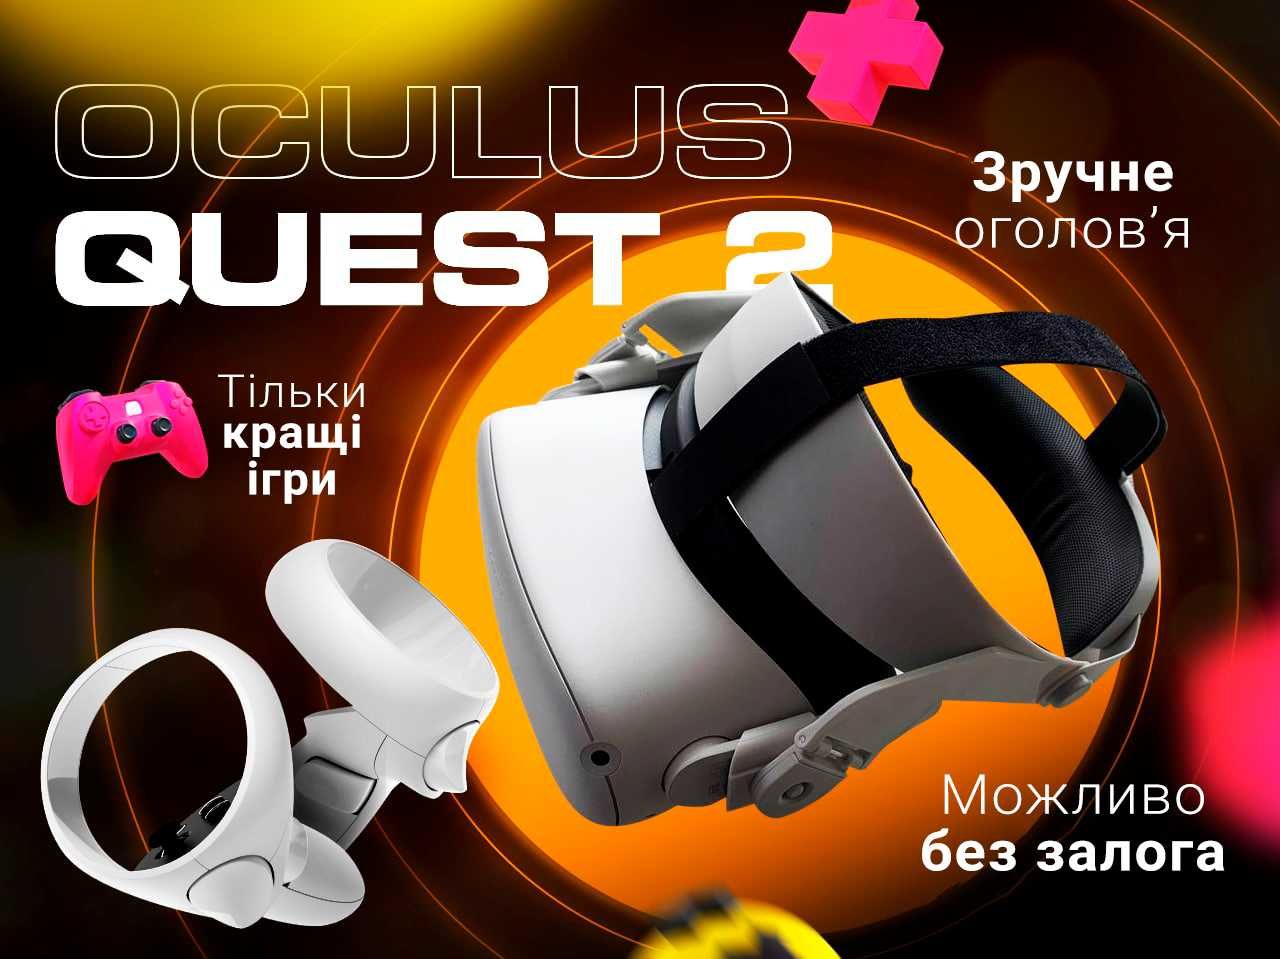 Оновлені ціни! Oculus quest 2 оренда VR окулярів Київ! Без Залога!